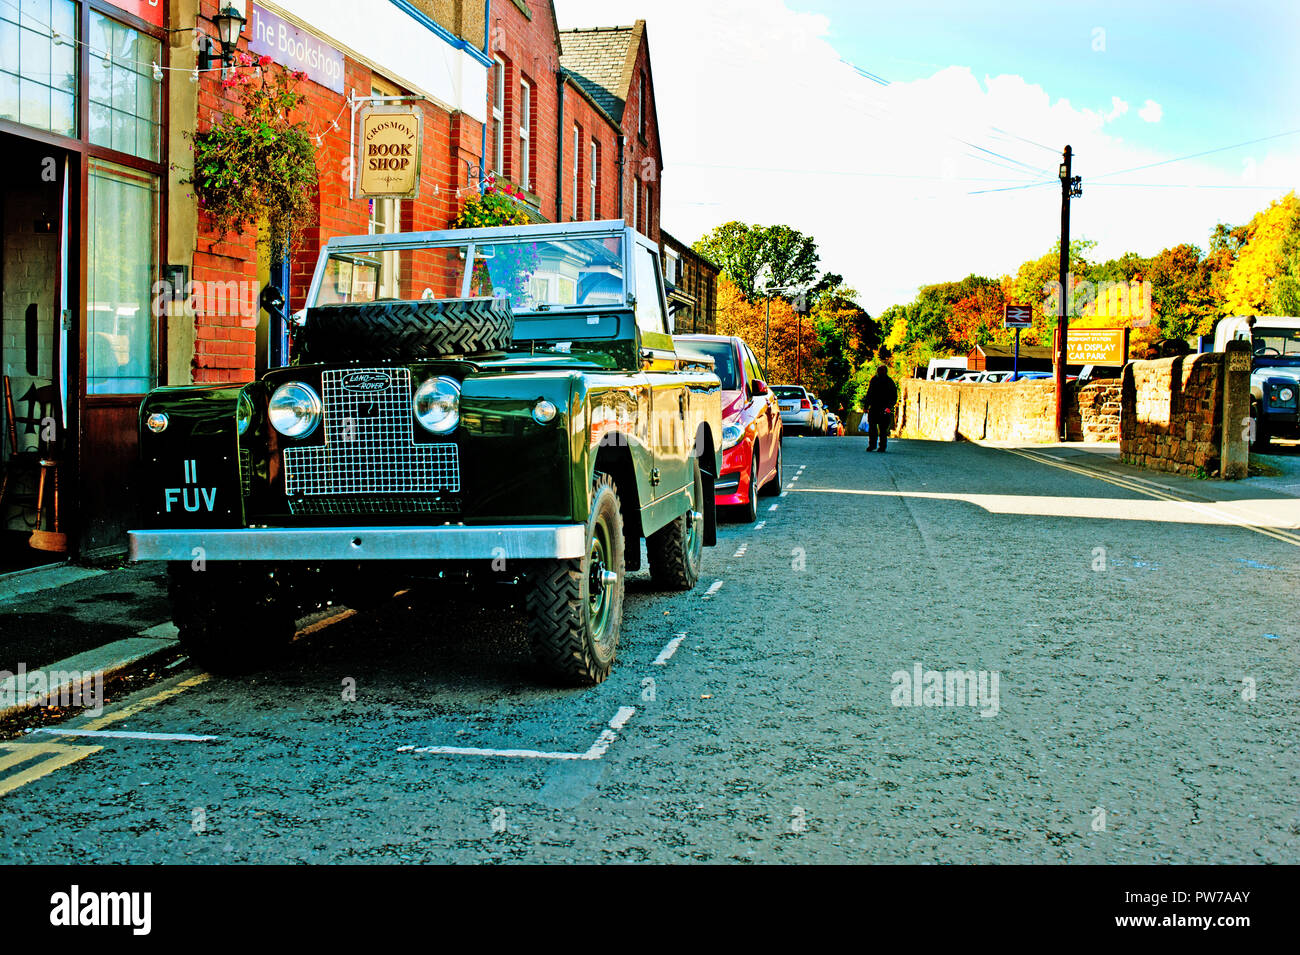 Land Rover bis Registrierung 11 FUV, Grosmont, North Yorkshire, England Pick Stockfoto